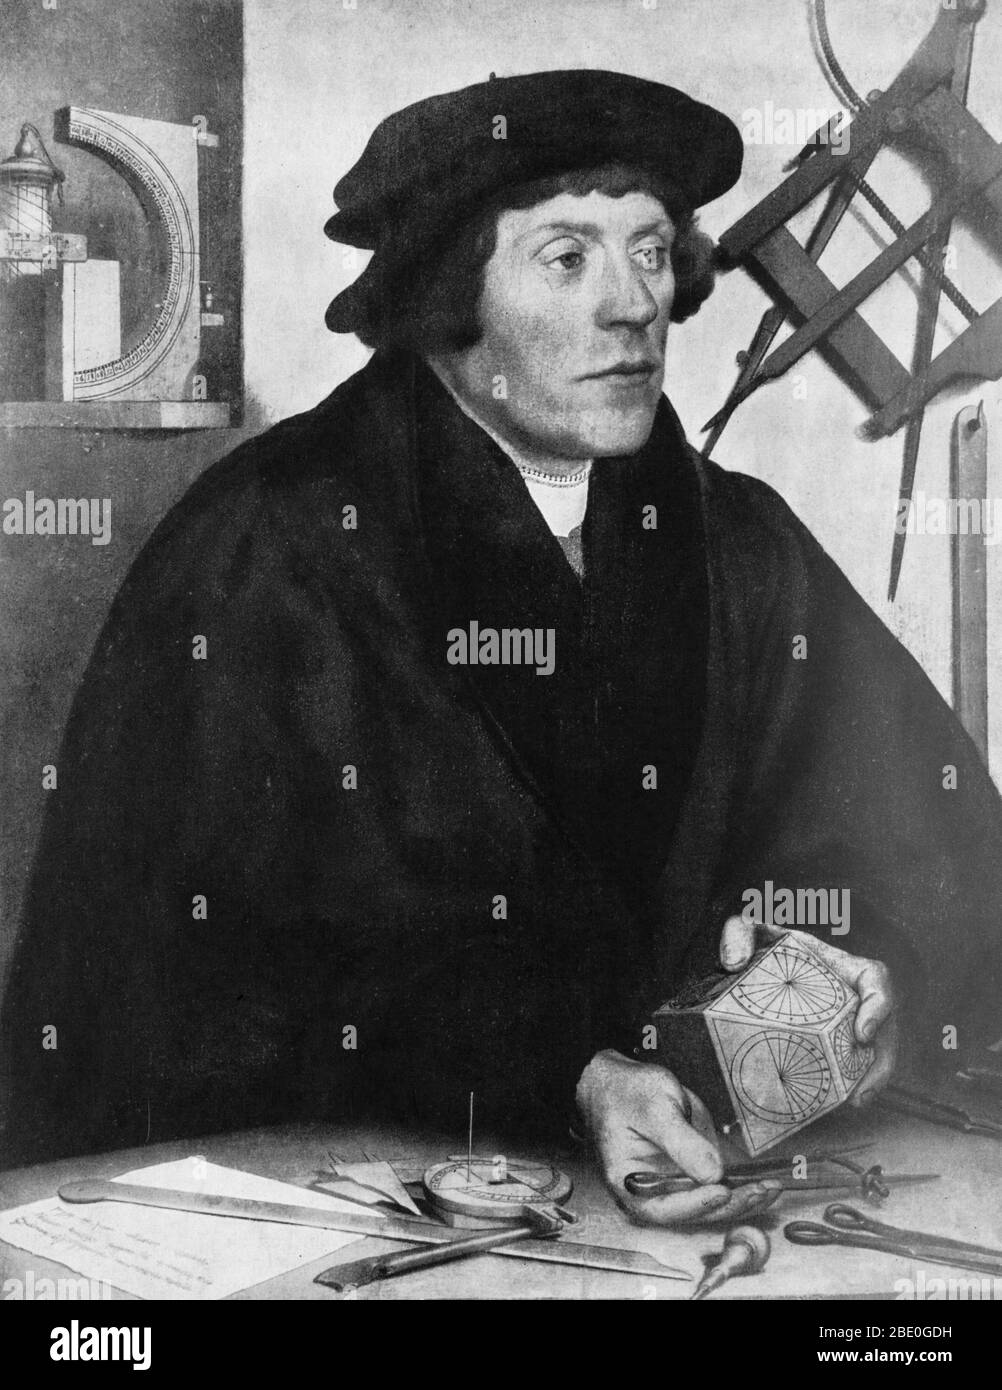 Nicholas Kratzer (1487 - 1550) war ein deutscher Mathematiker, Astronom und Horologe (das Studium der Zeit). Kratzer kam 1516 nach England und etablierte sich als Teil des künstlerischen und wissenschaftlichen Kreises um Sir Thomas More. Er betreutes Mehr's Kinder in Mathematik und Astronomie und seine Talente erhalten ihn eine Position als Astronom und Uhr Hersteller zu König Heinrich VIII. Er arbeitete auch mit Holbein an der Herstellung von Karten, und im Gegenzug produzierte der Künstler ein Porträt von ihm im Jahr 1528, das jetzt hängt im Louvre. Es zeigt den Handwerker, umgeben von den Werkzeugen seines Handwerks. Er starb ich Stockfoto